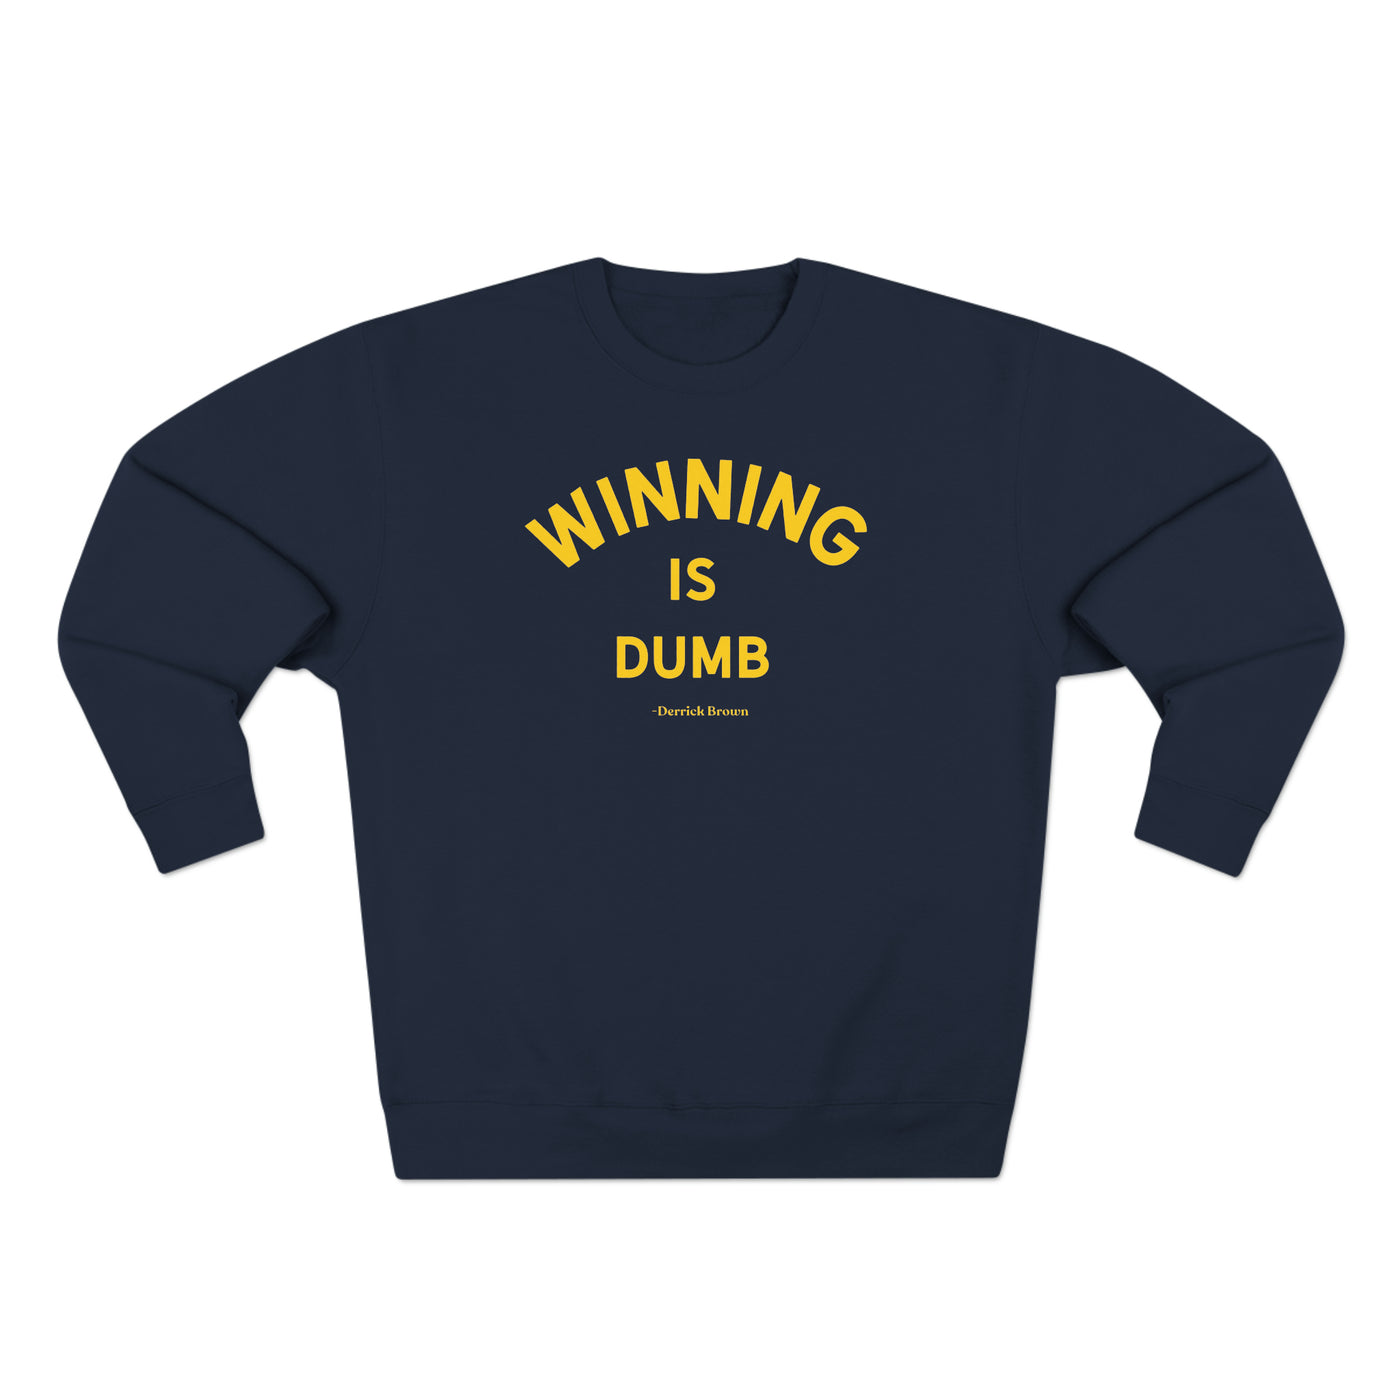 winning is dumb, derrick brown Unisex Premium Crewneck Sweatshirt